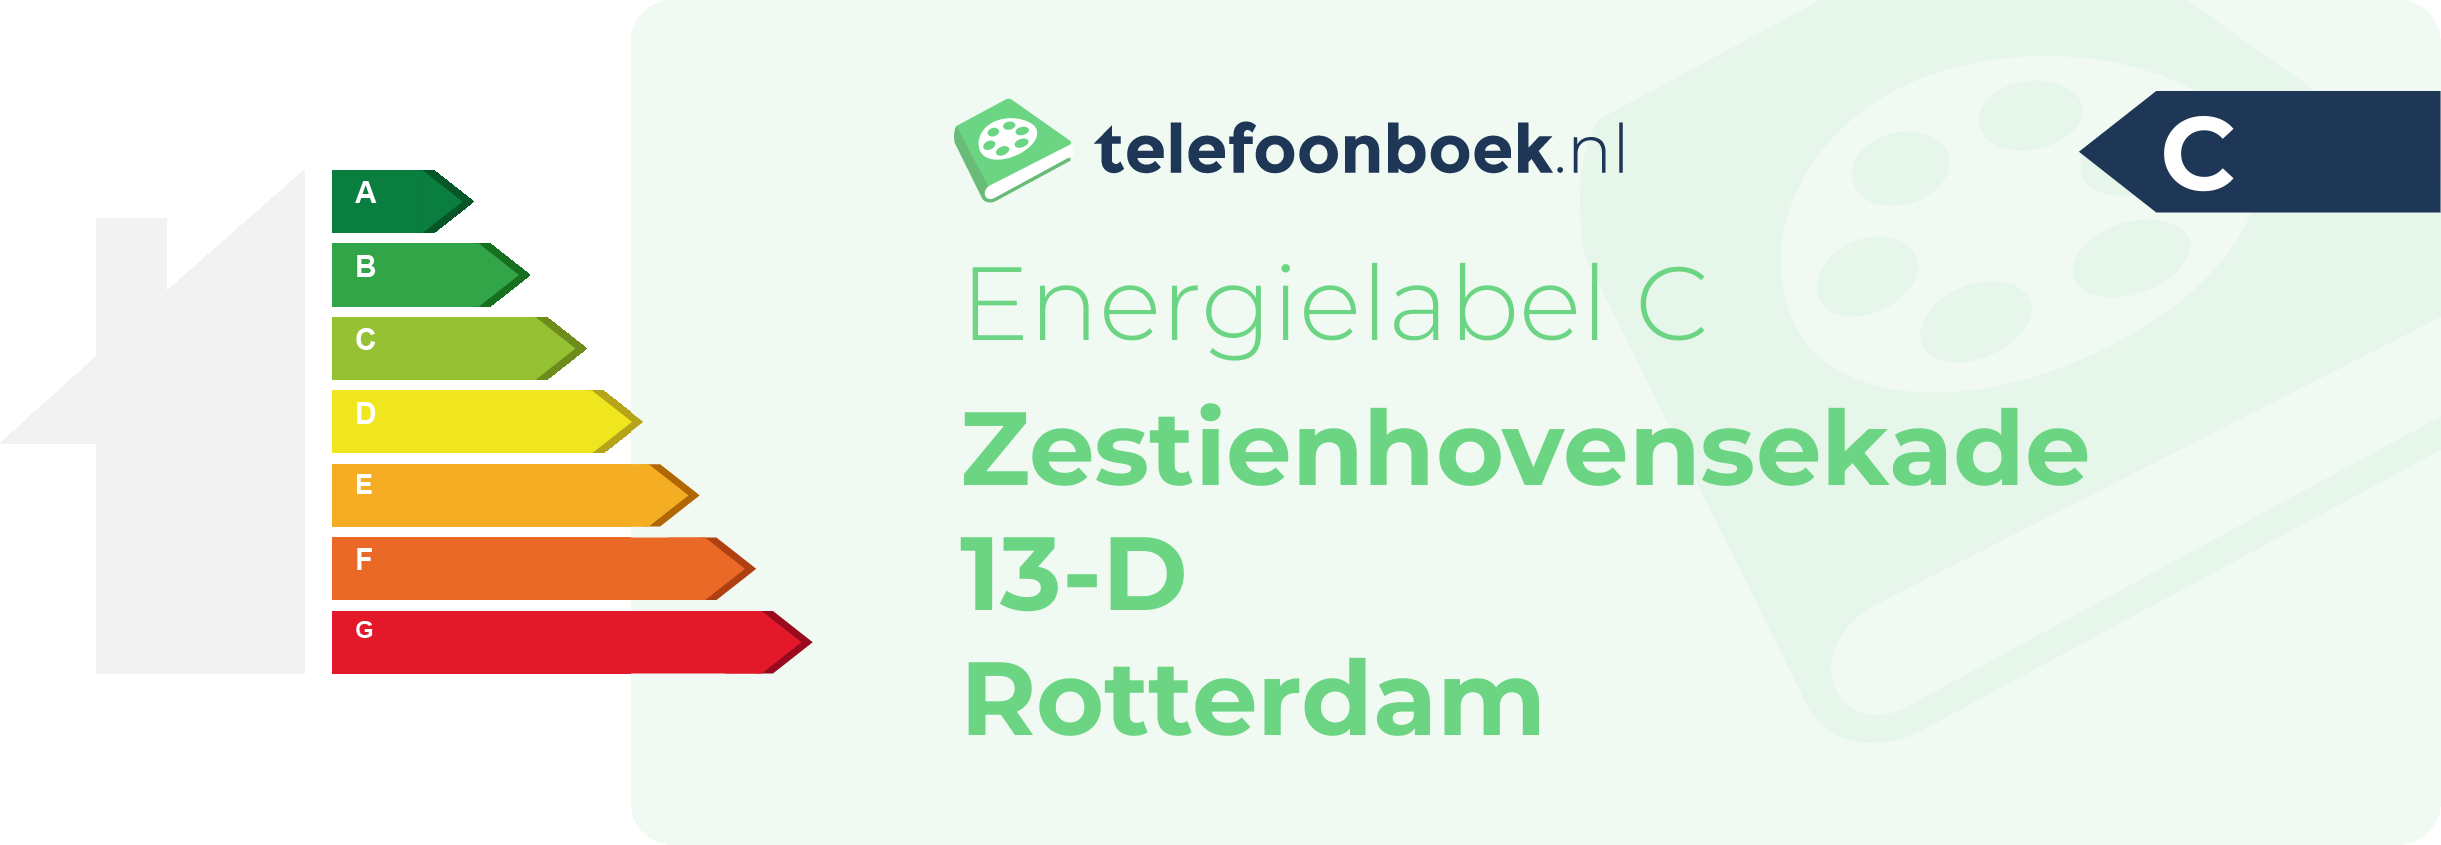 Energielabel Zestienhovensekade 13-D Rotterdam